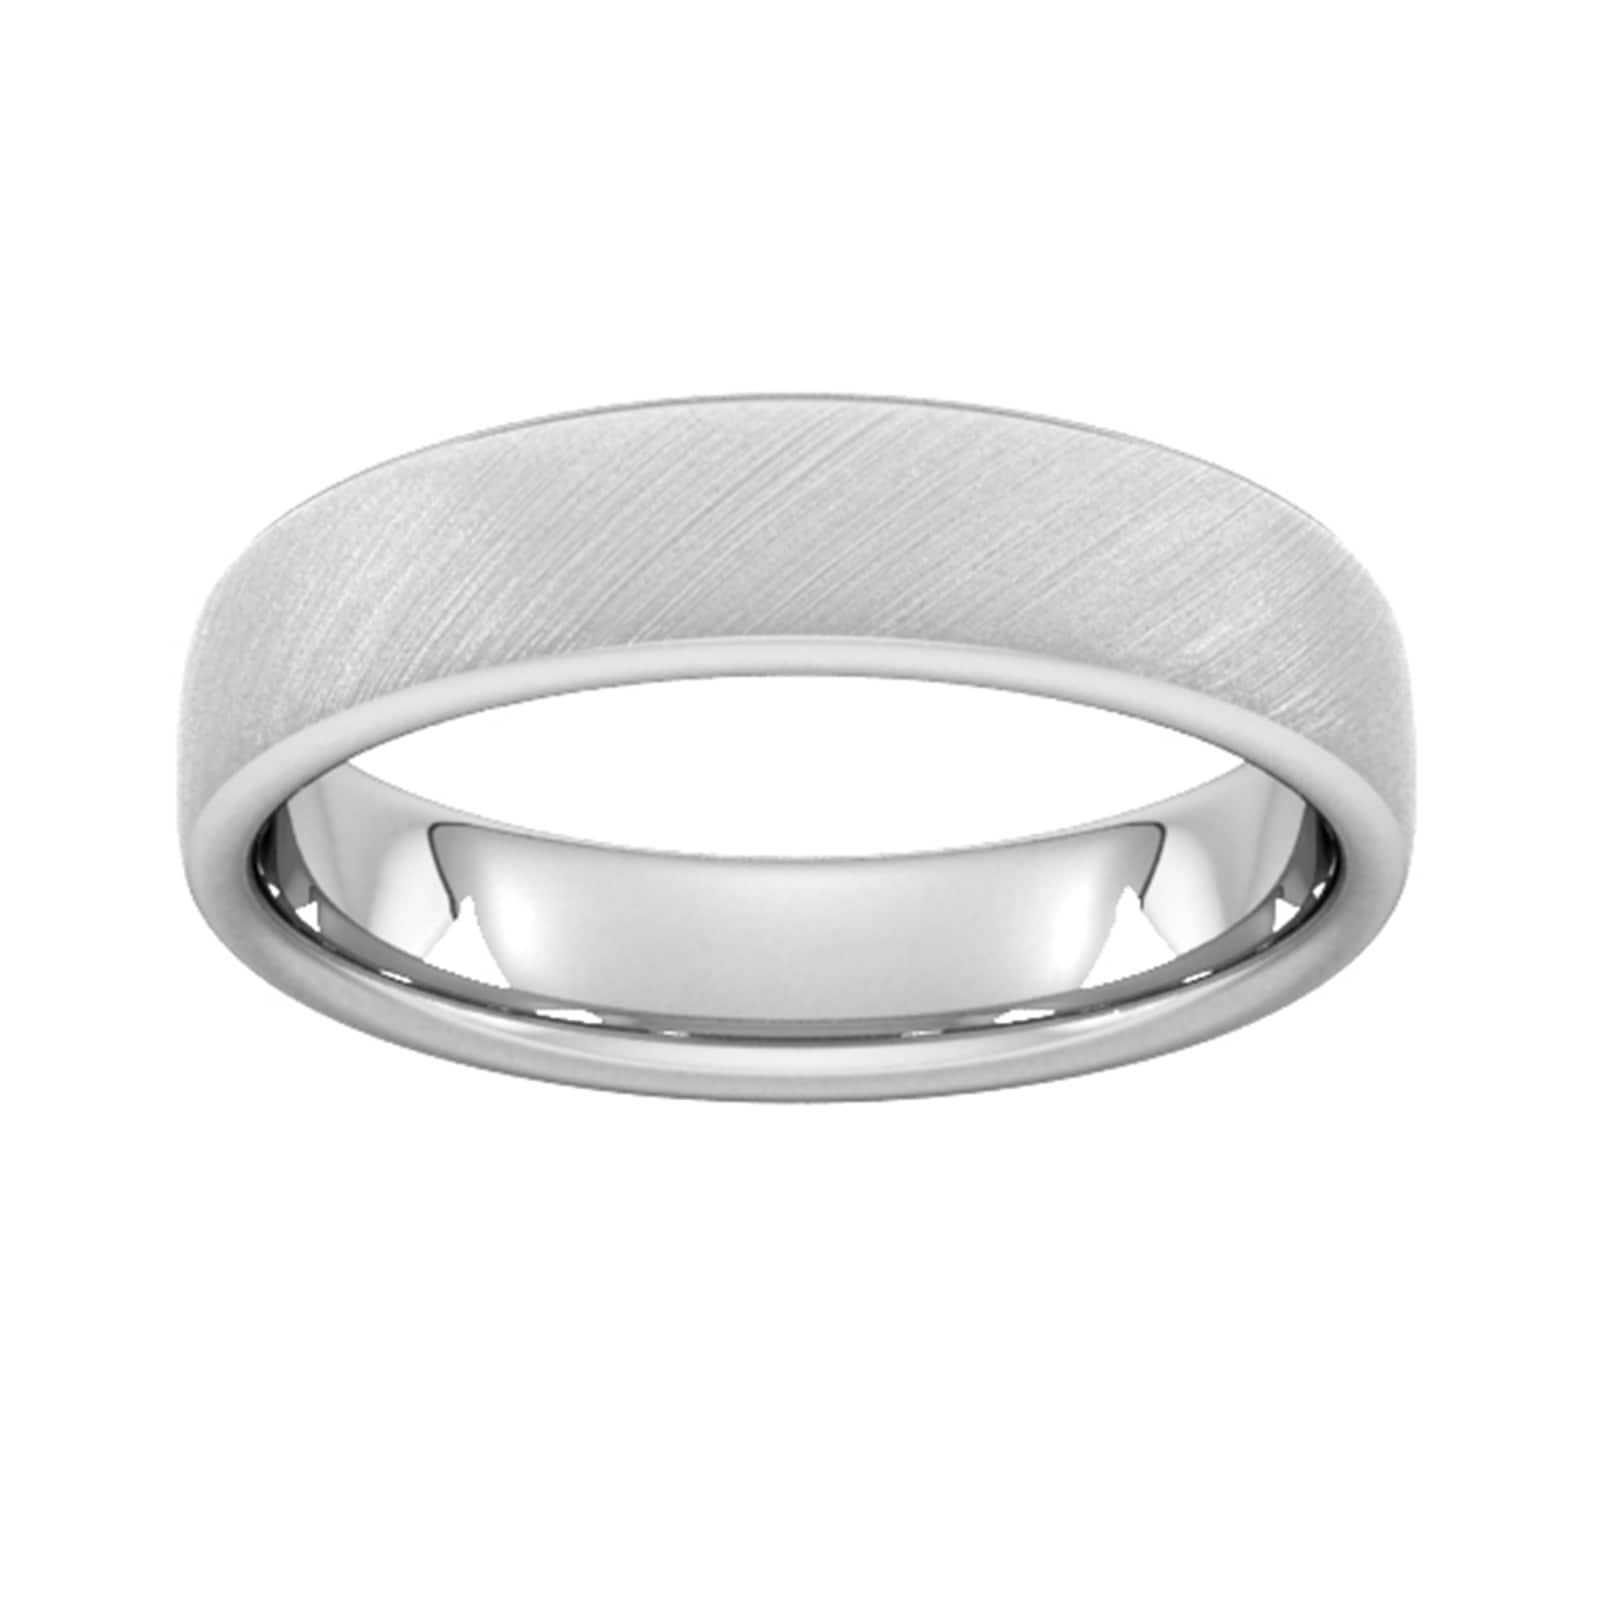 5mm Slight Court Standard Diagonal Matt Finish Wedding Ring In 950 Palladium - Ring Size Y